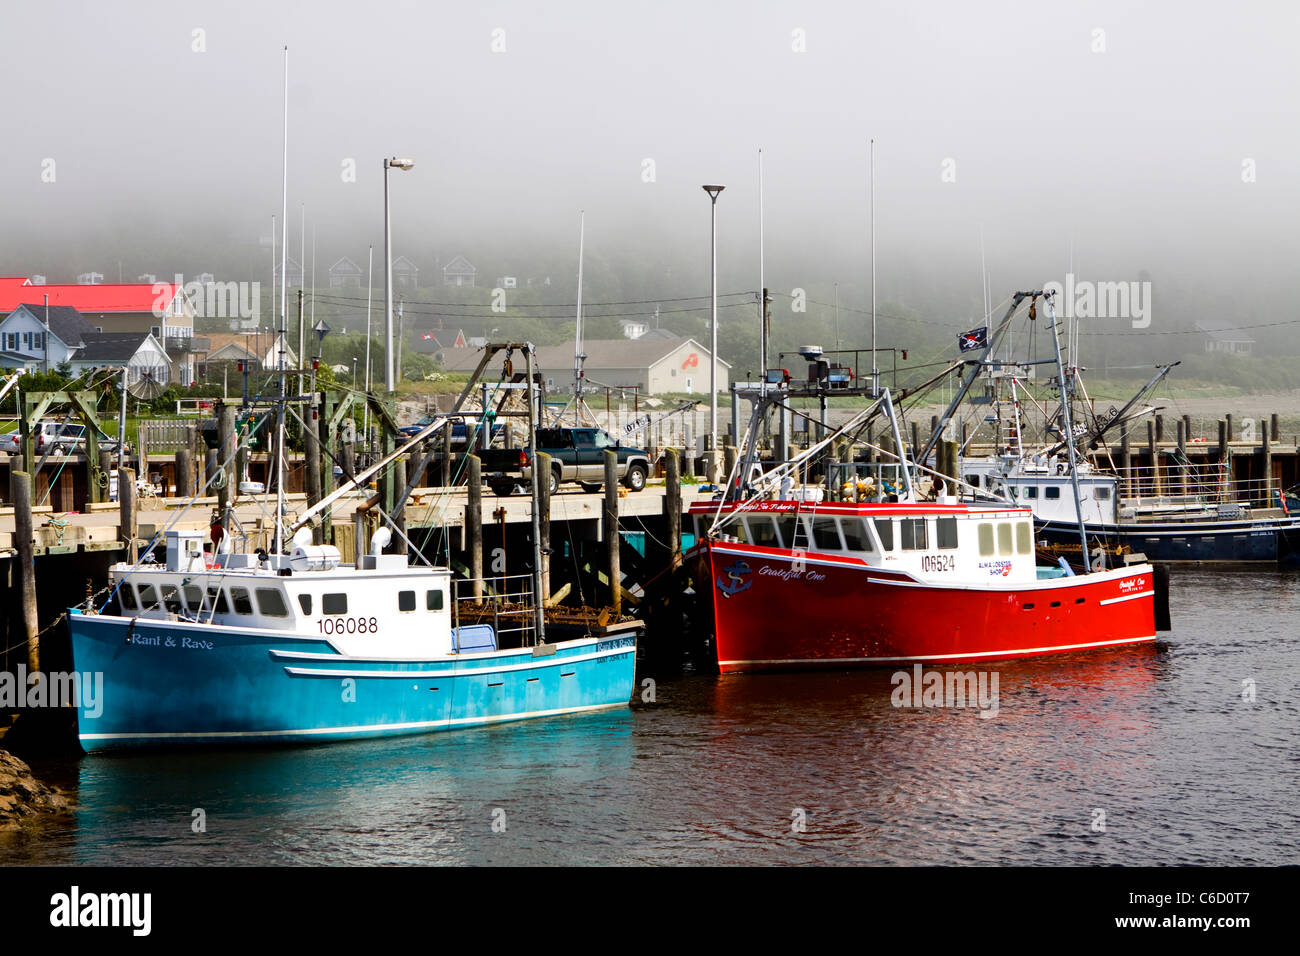 La marea baja en la tierra, el alma, la Bahía de Fundy, langosta barcos sentado en el lecho marino Foto de stock